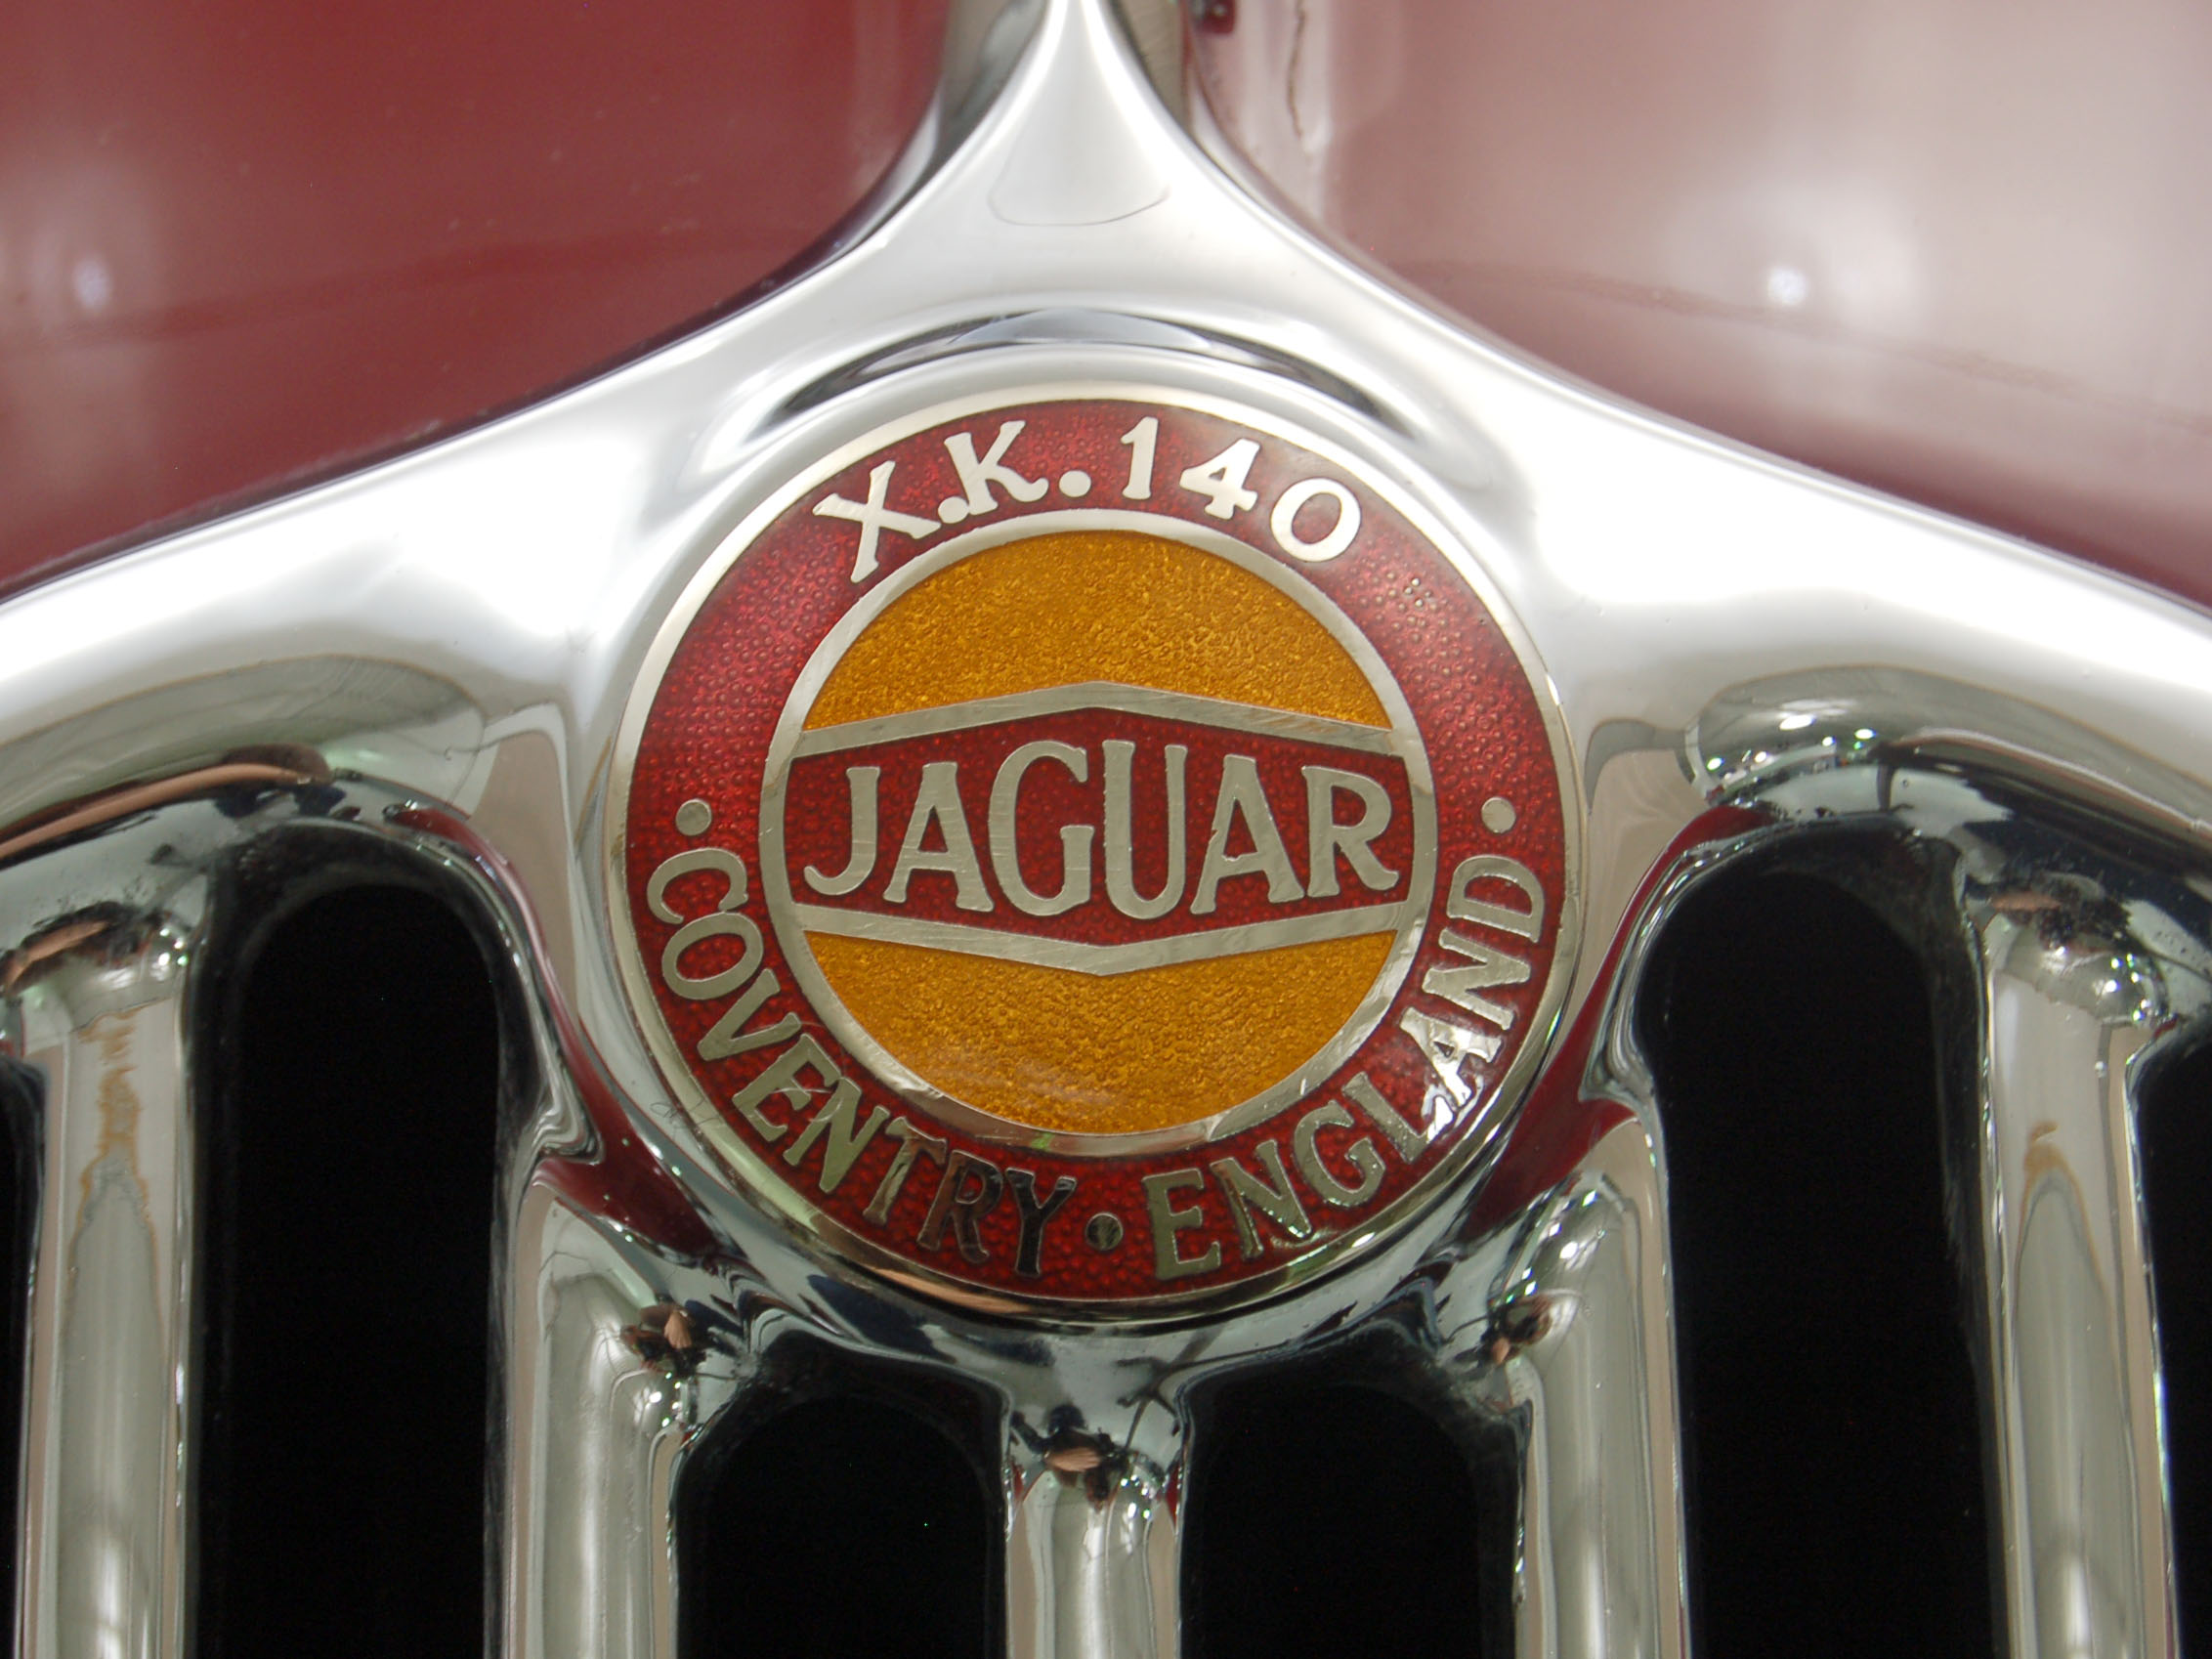 1955 jaguar xk 140